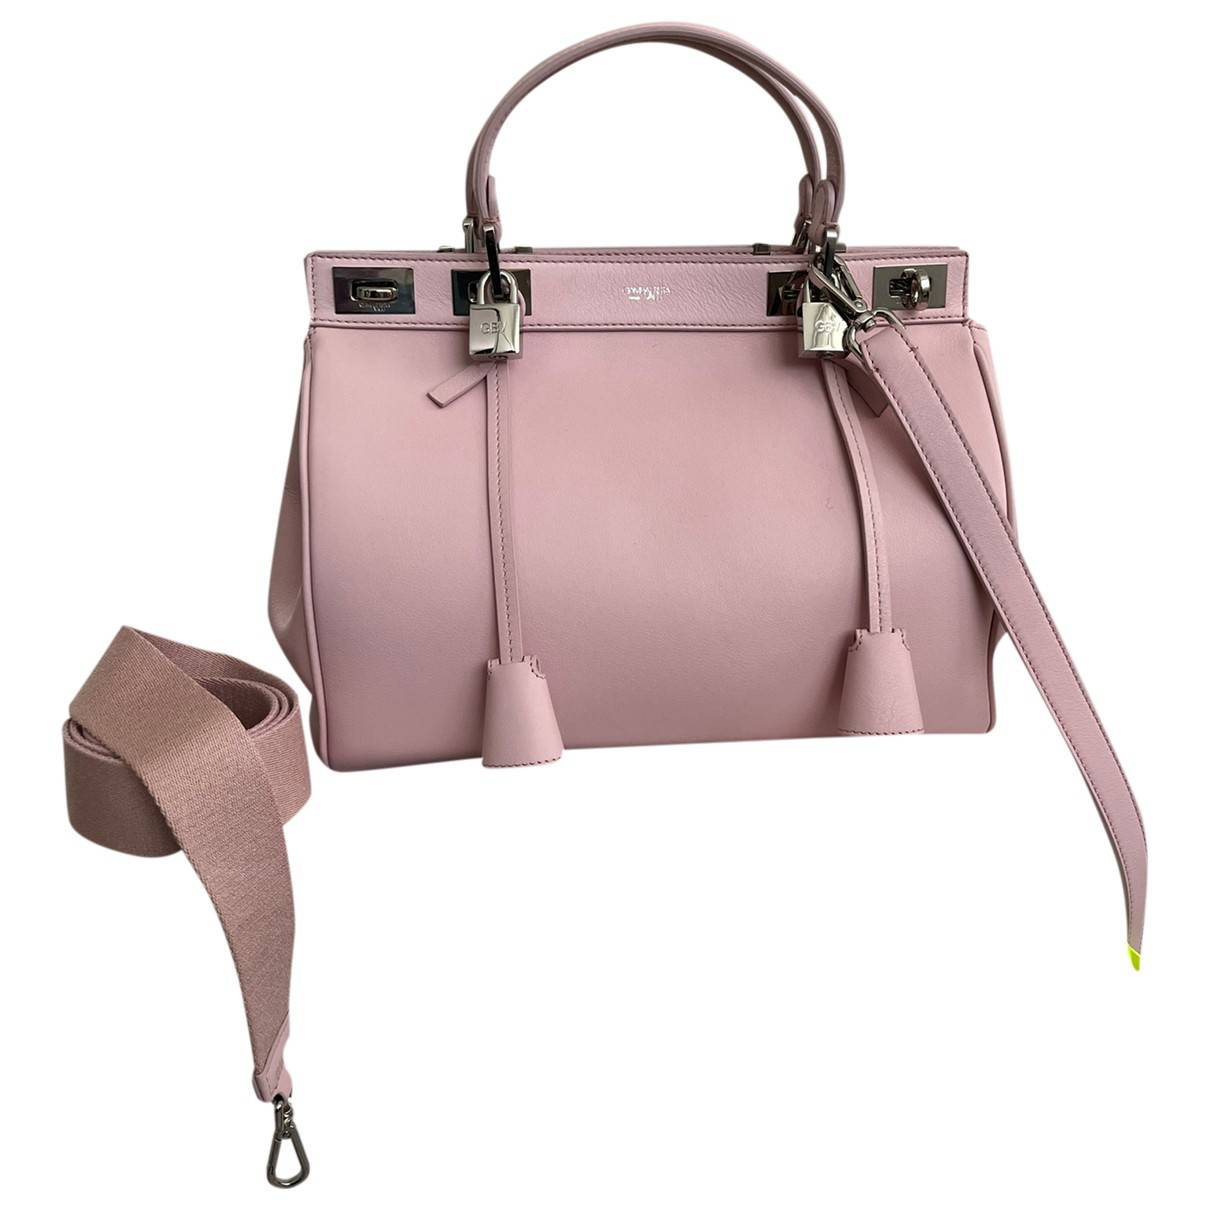 Leather handbag Giambattista Valli